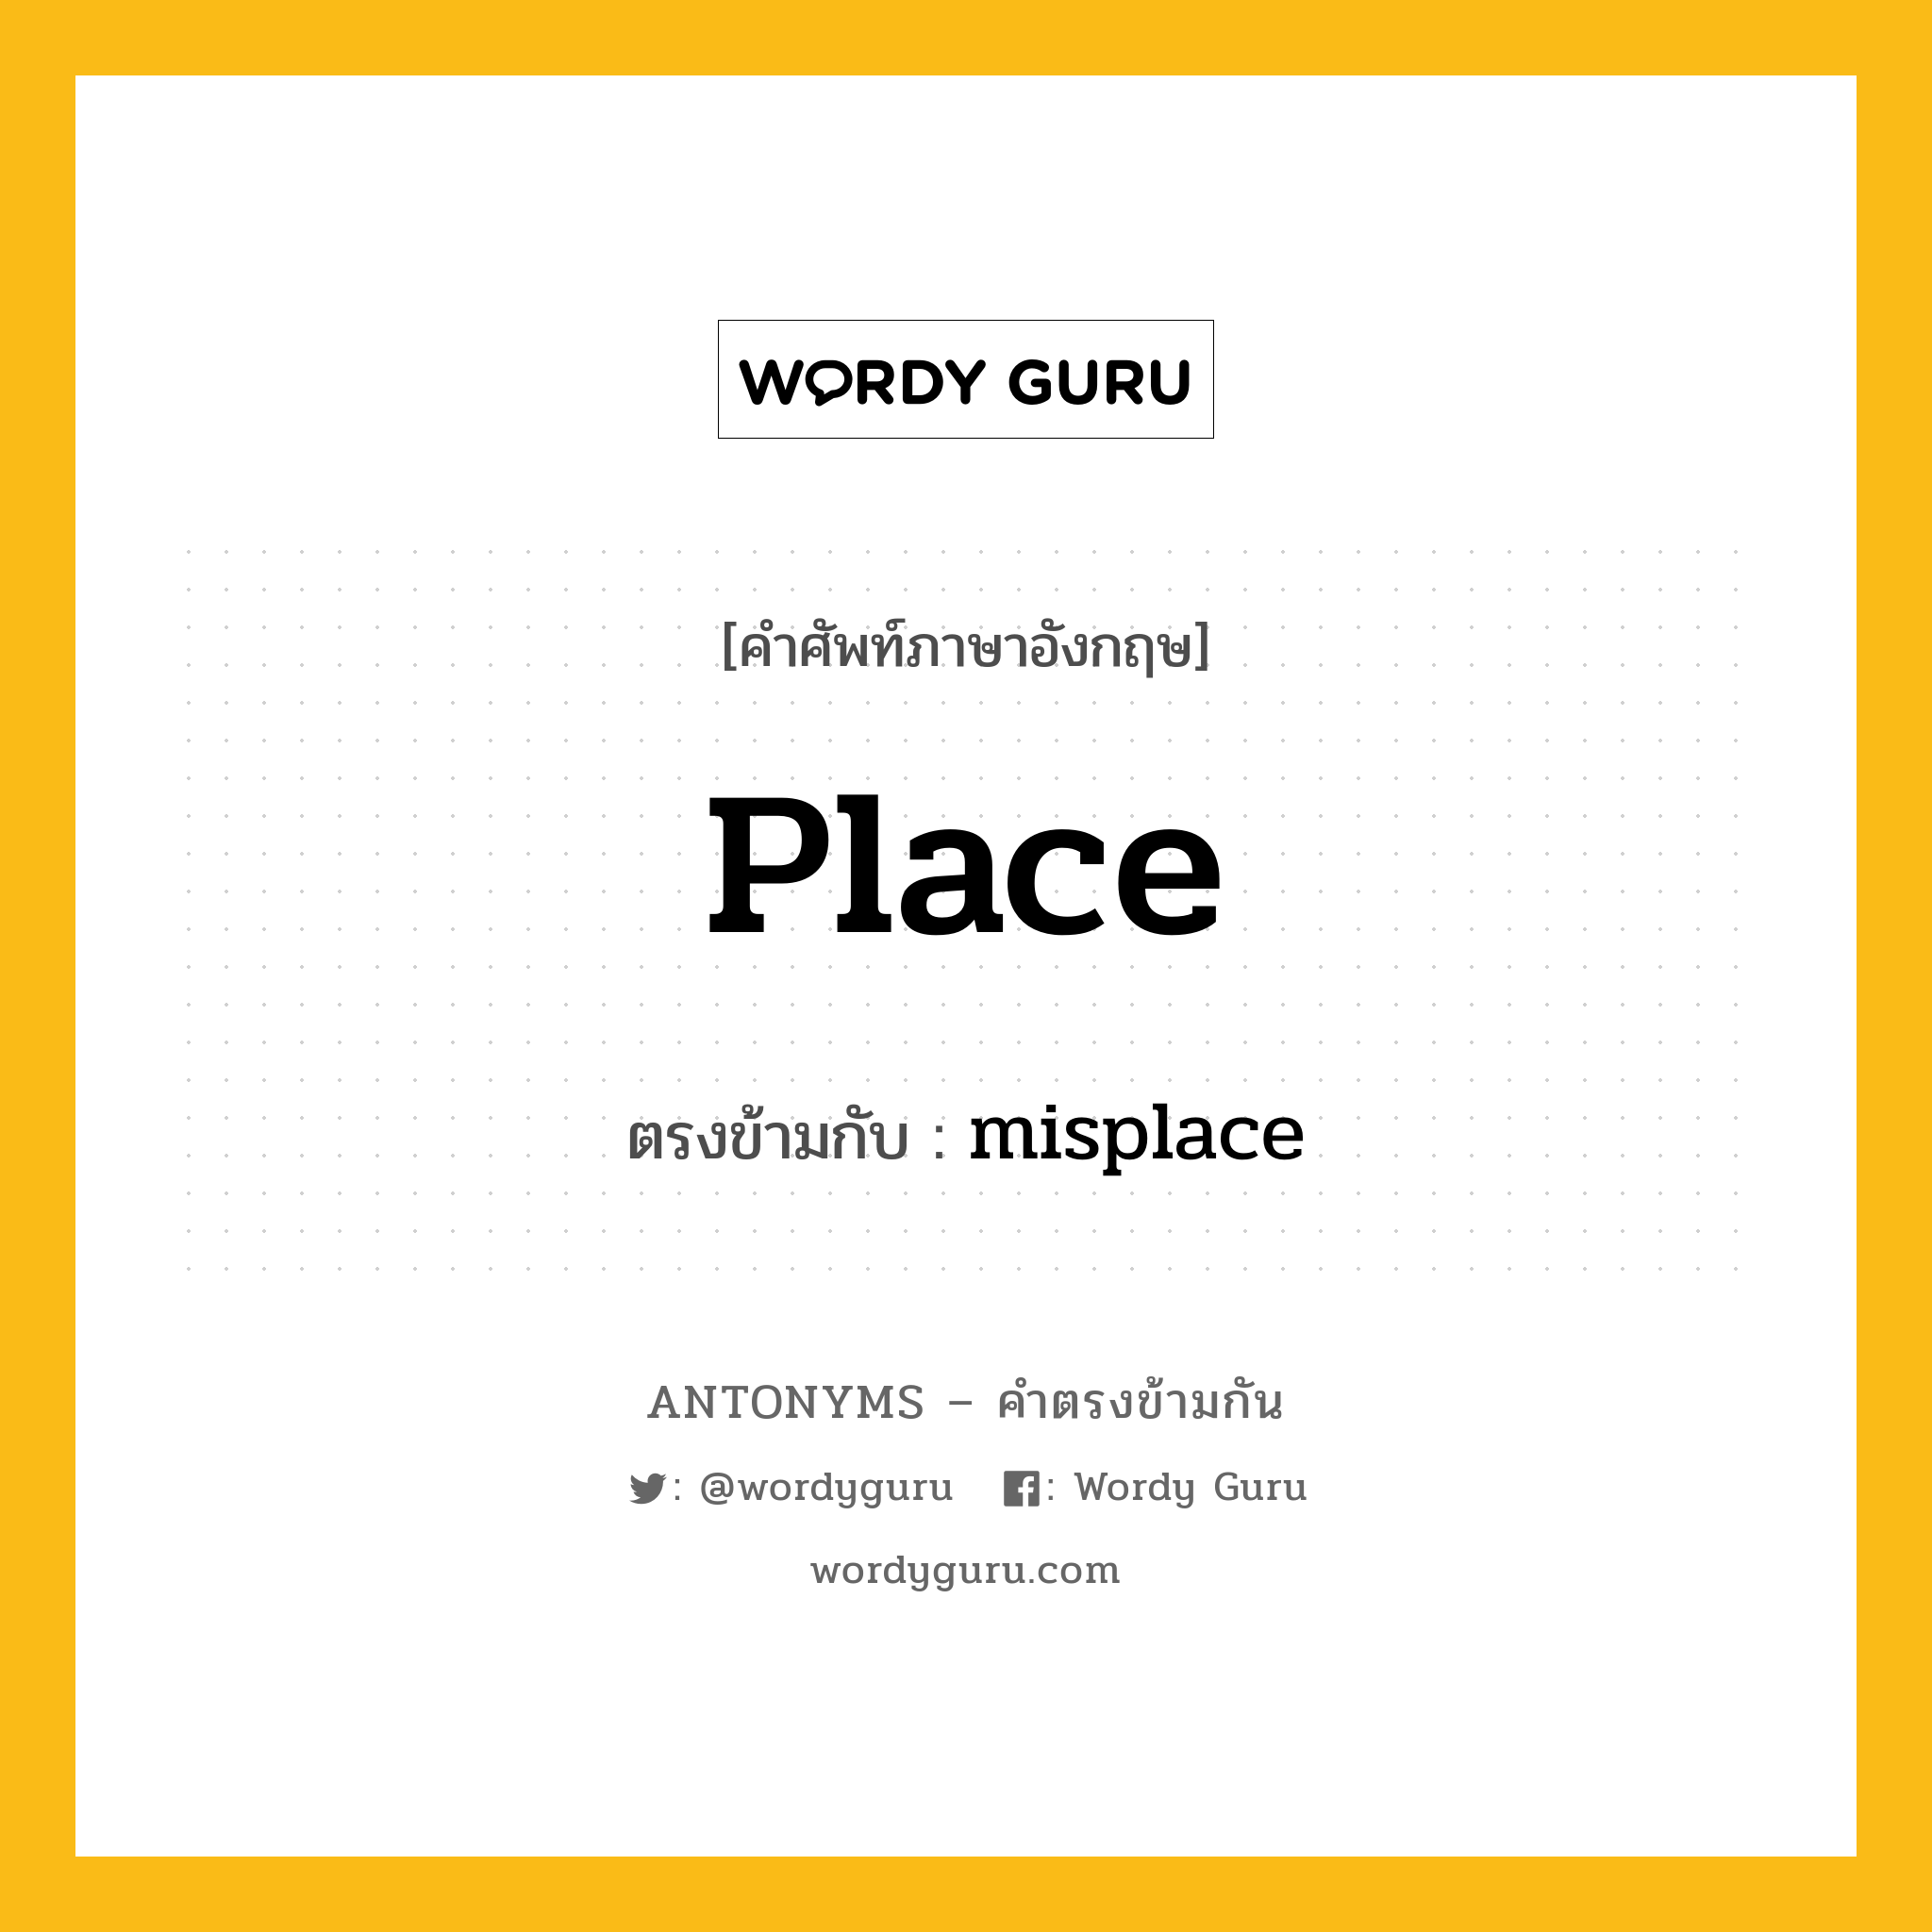 place เป็นคำตรงข้ามกับคำไหนบ้าง?, คำศัพท์ภาษาอังกฤษ place ตรงข้ามกับ misplace หมวด misplace